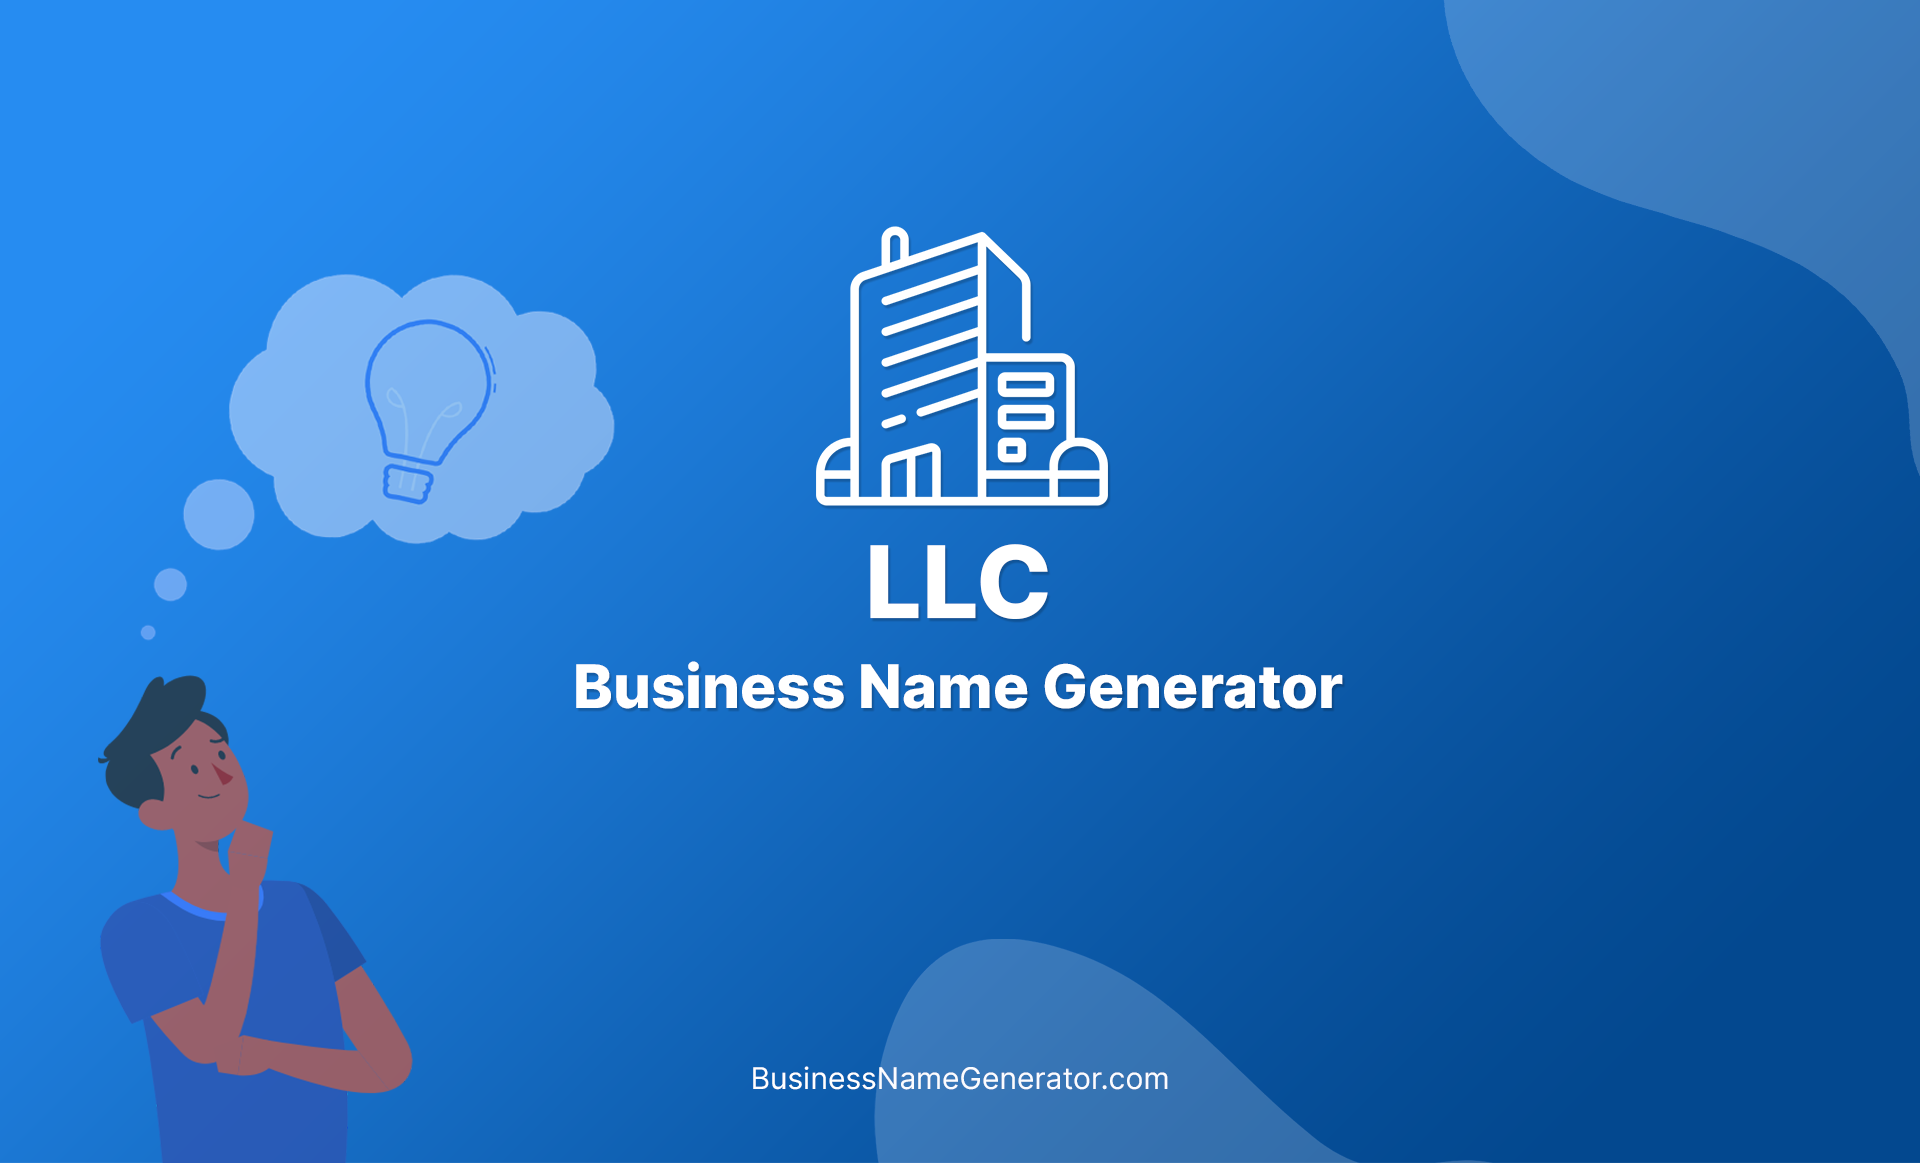 LLC Business Name Generator